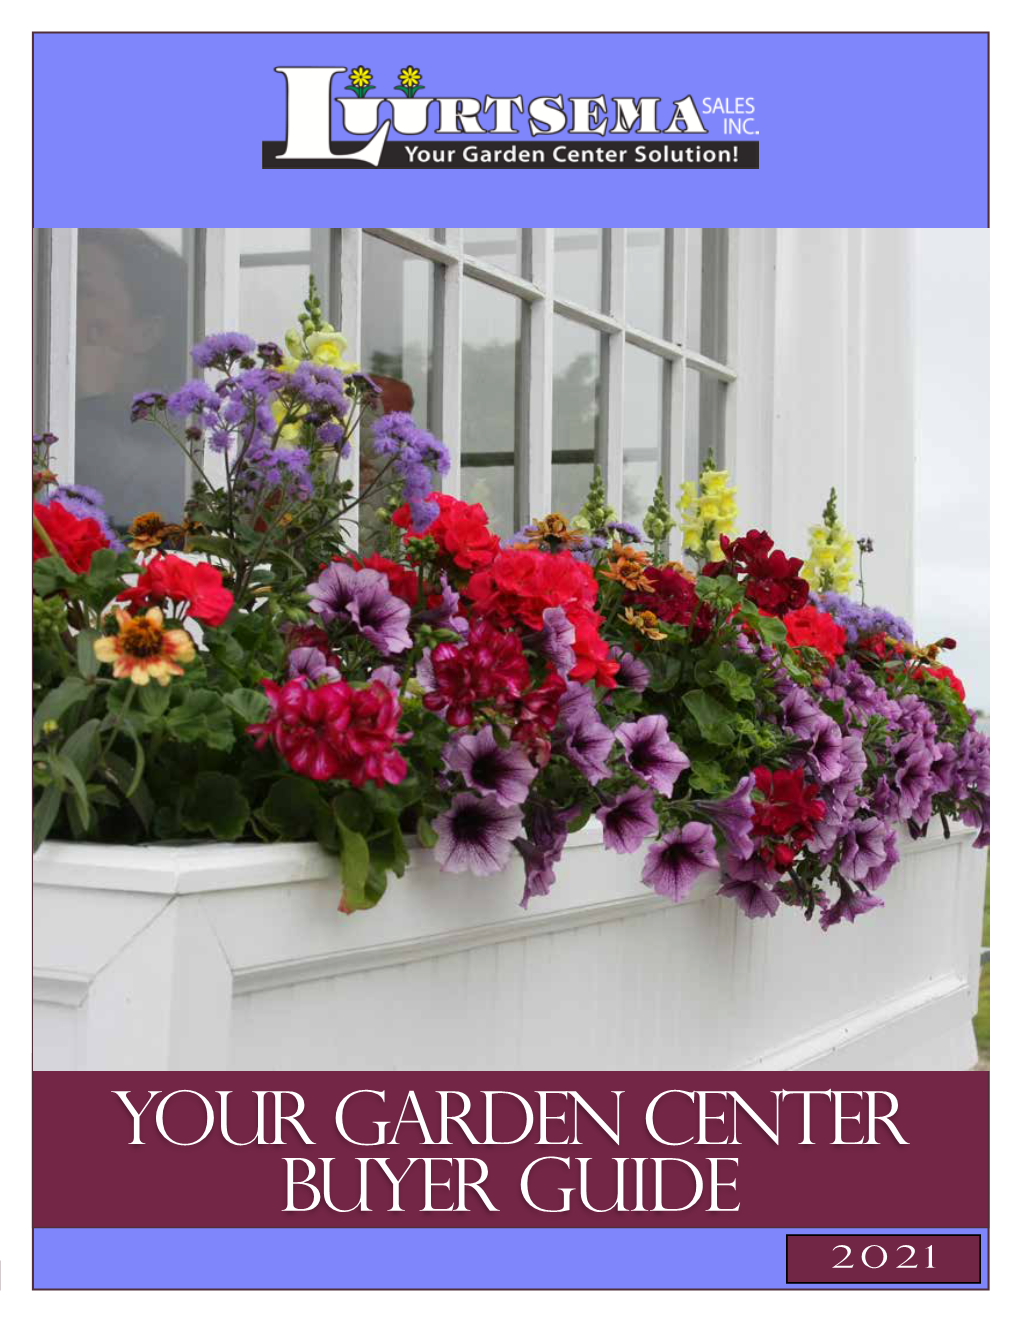 Your Garden Center Buyer Guide 2021 1-800-253-2052 Luurtsema Sales Staff